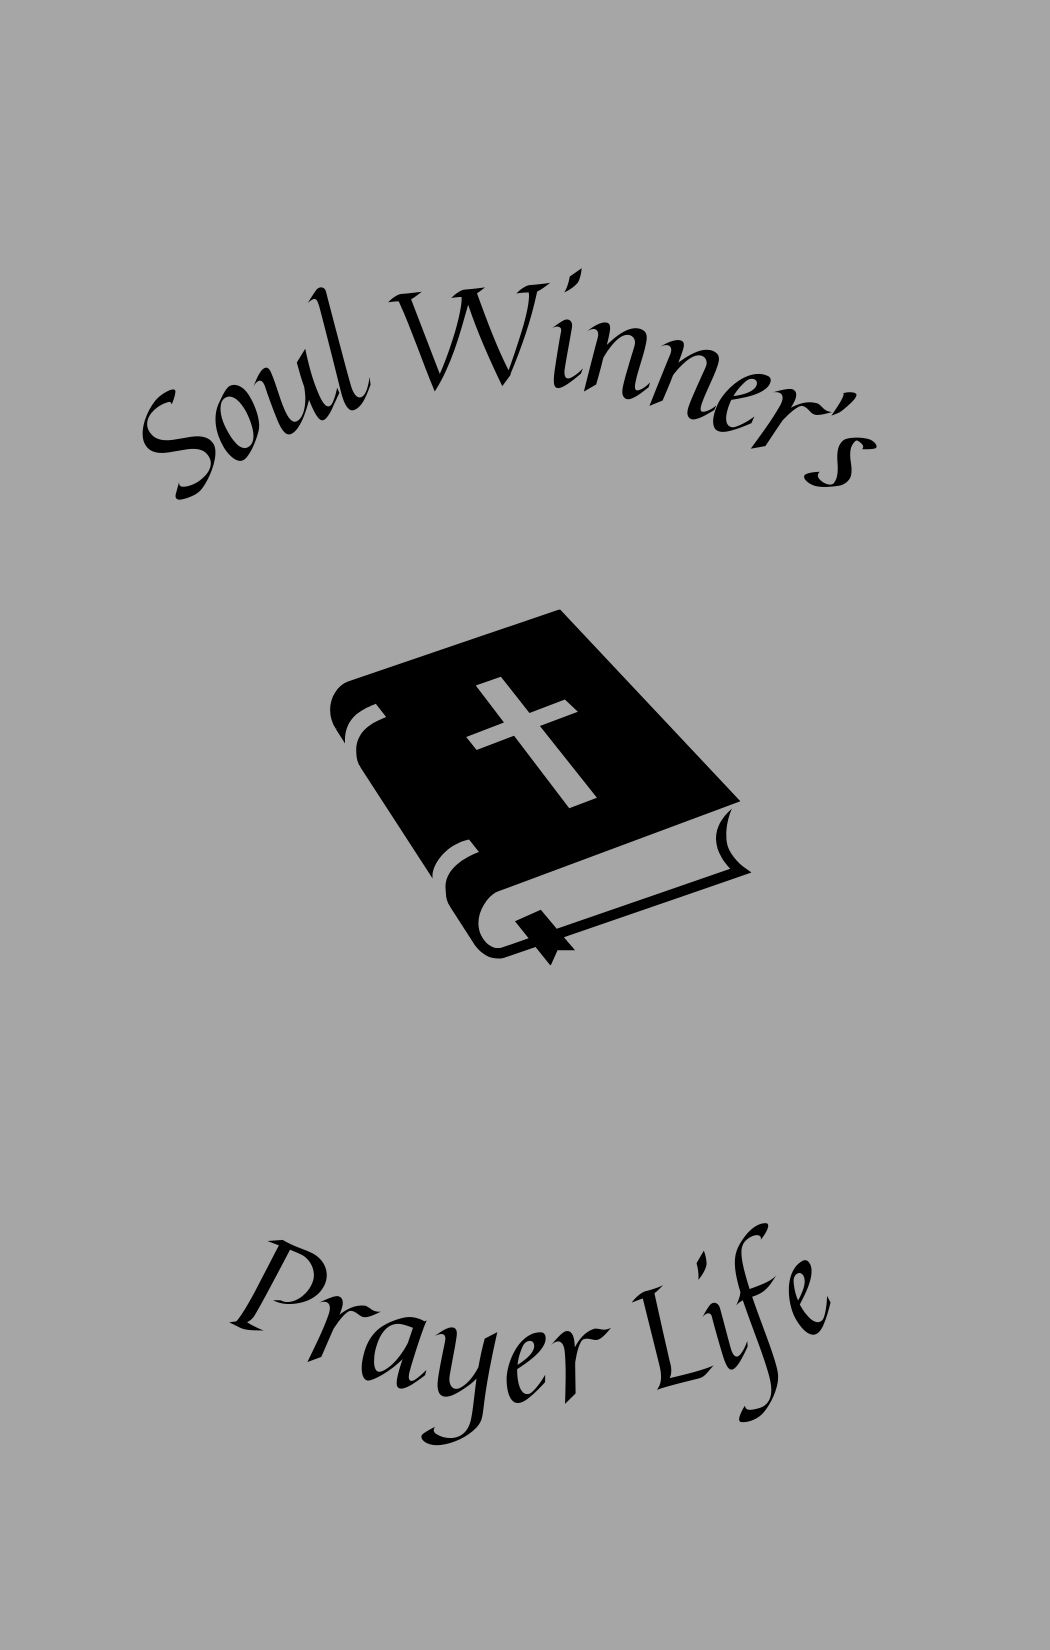 soul winner's prayer life cover image